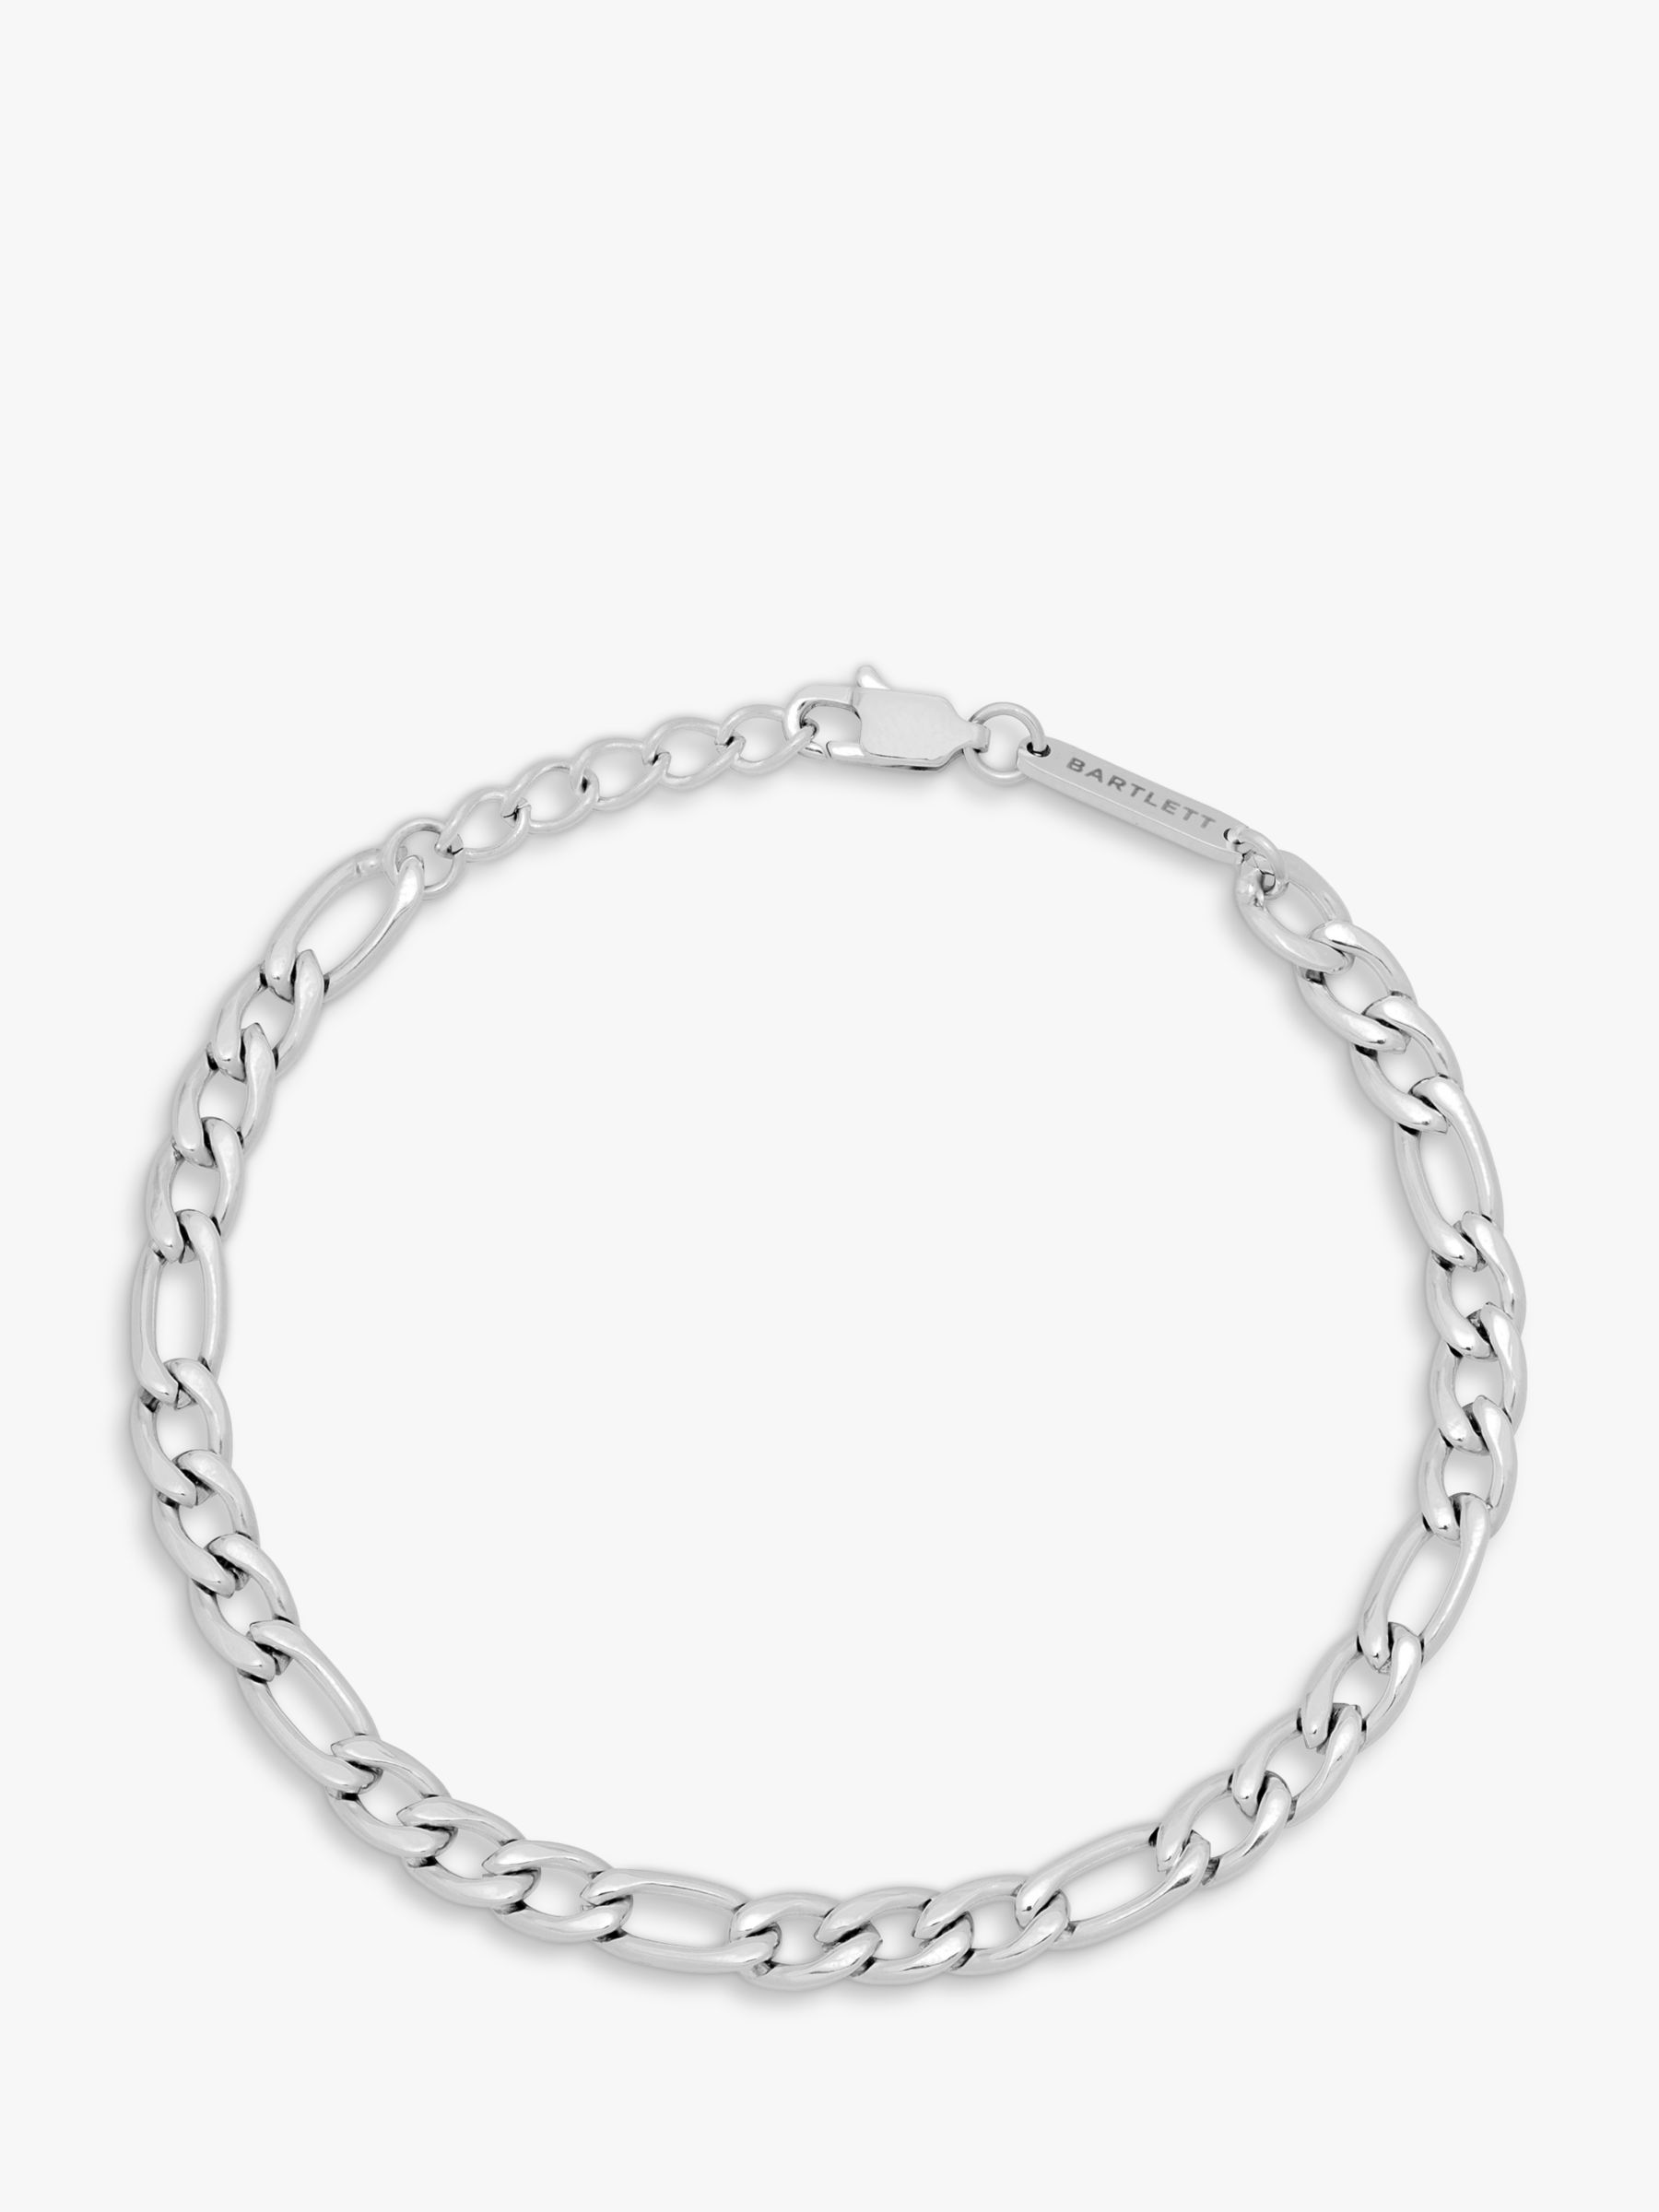 BARTLETT LONDON Men's Figaro Chain Bracelet